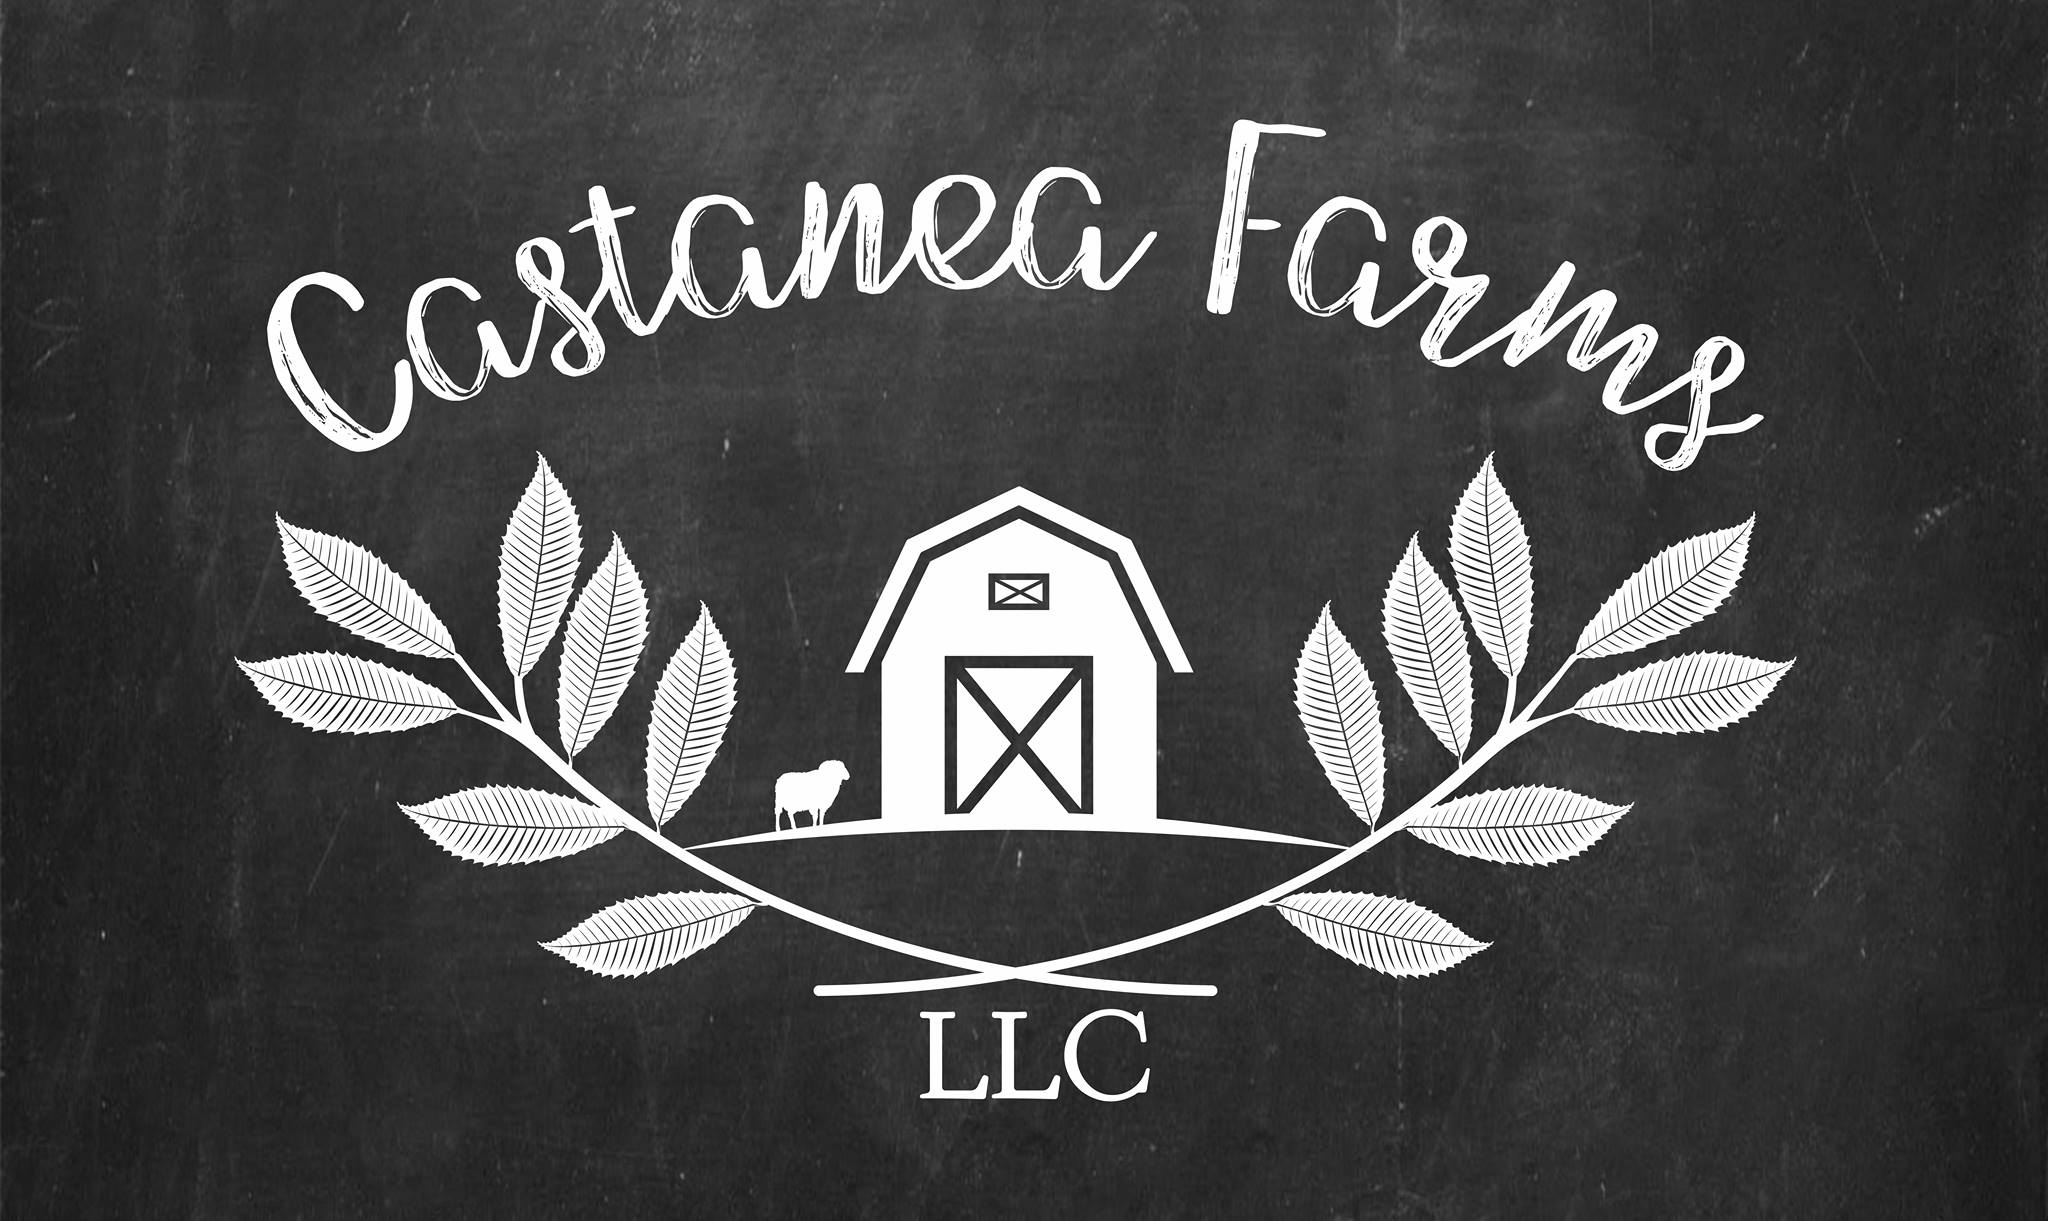 Castanea Farms logo